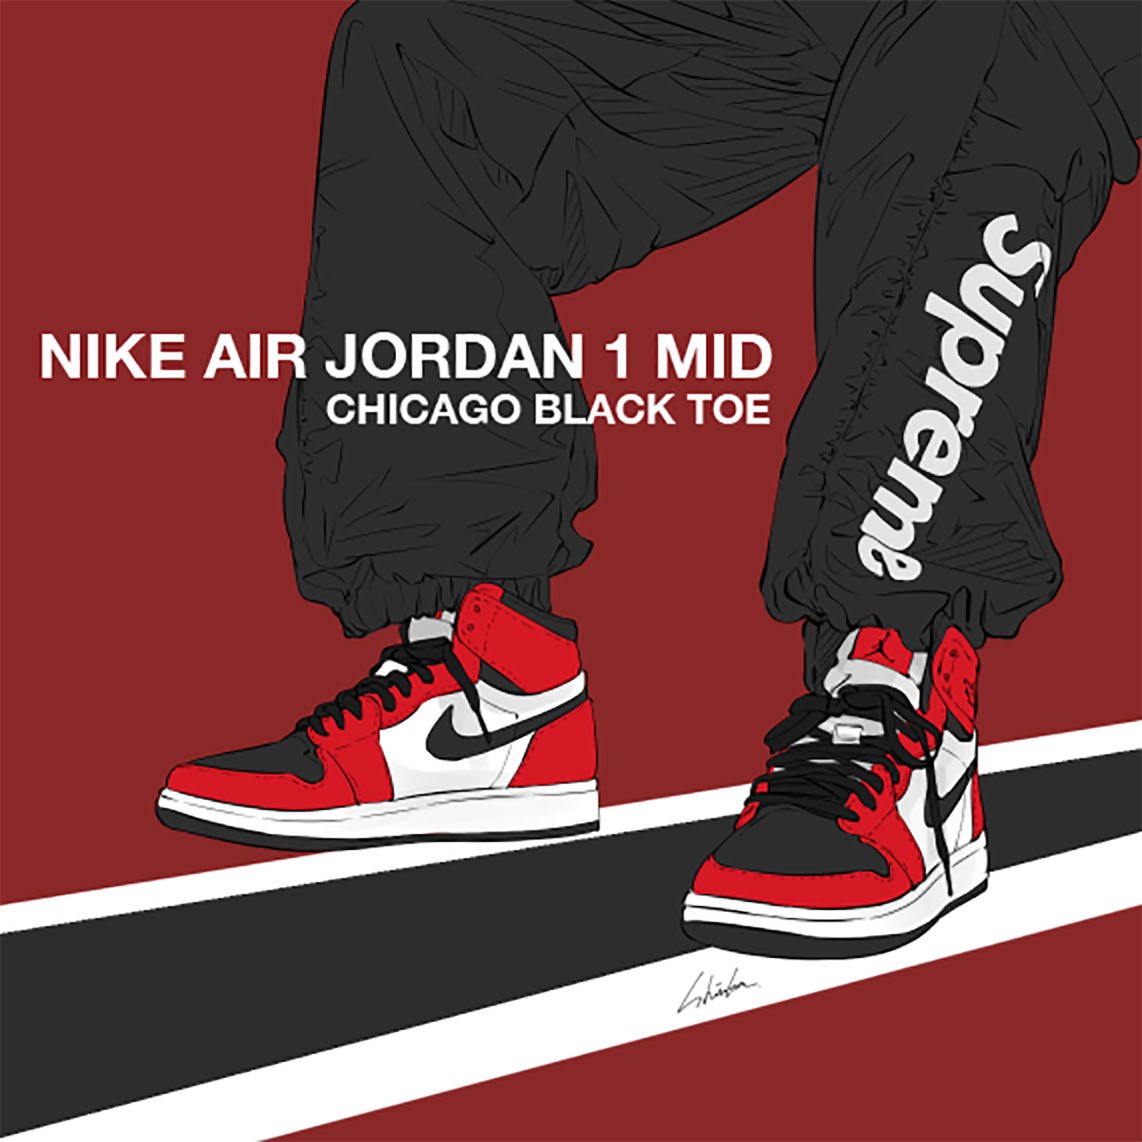 Nike Air Jordan 1 Mid Chicago Black Toe Illustration イラスト 絵描きさんと繋がりたい イラスト好きと繋がりたい 私の絵柄が好みって人にフォローされたい Sneakers Nike Illustration イラスト 絵描きさんと繋がりたい イラスト好きと繋がりたい 私の